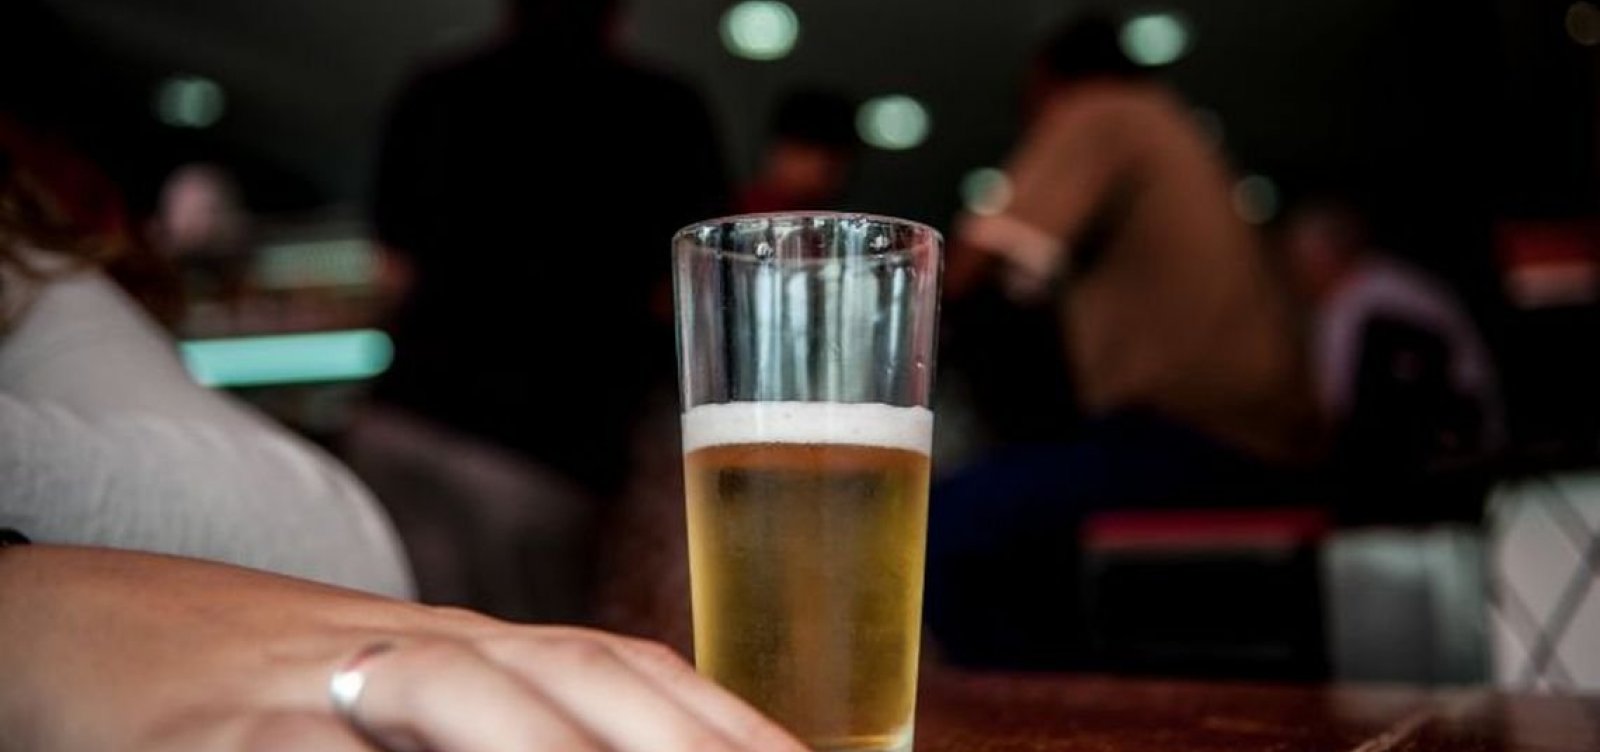 Exames apontam contaminação em mais onze lotes de cerveja Backer